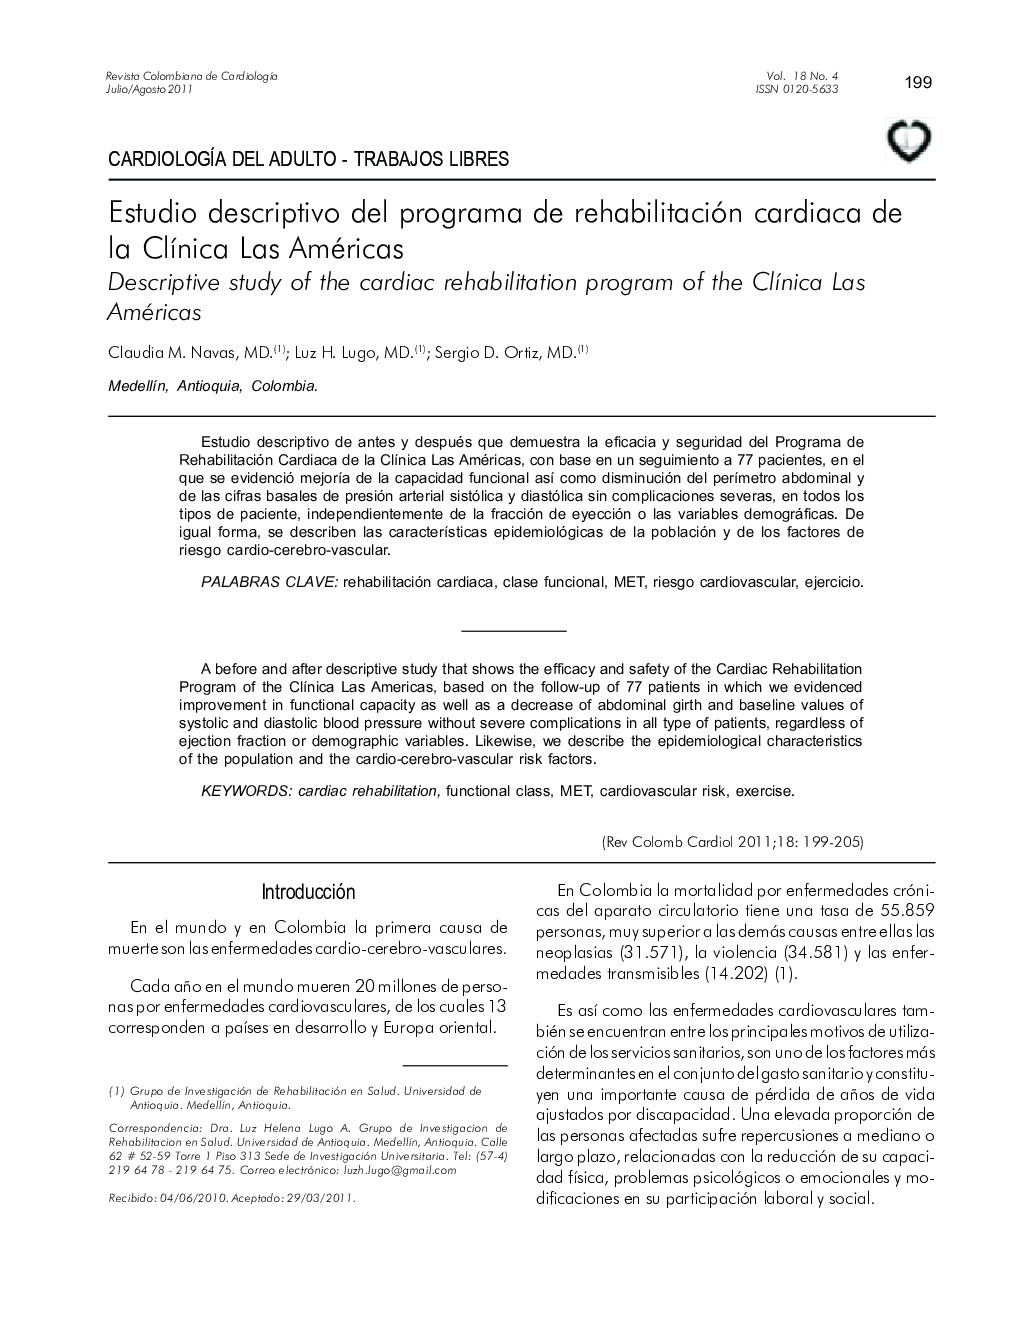 Estudio descriptivo del programa de rehabilitación cardiaca de la Clínica Las Américas